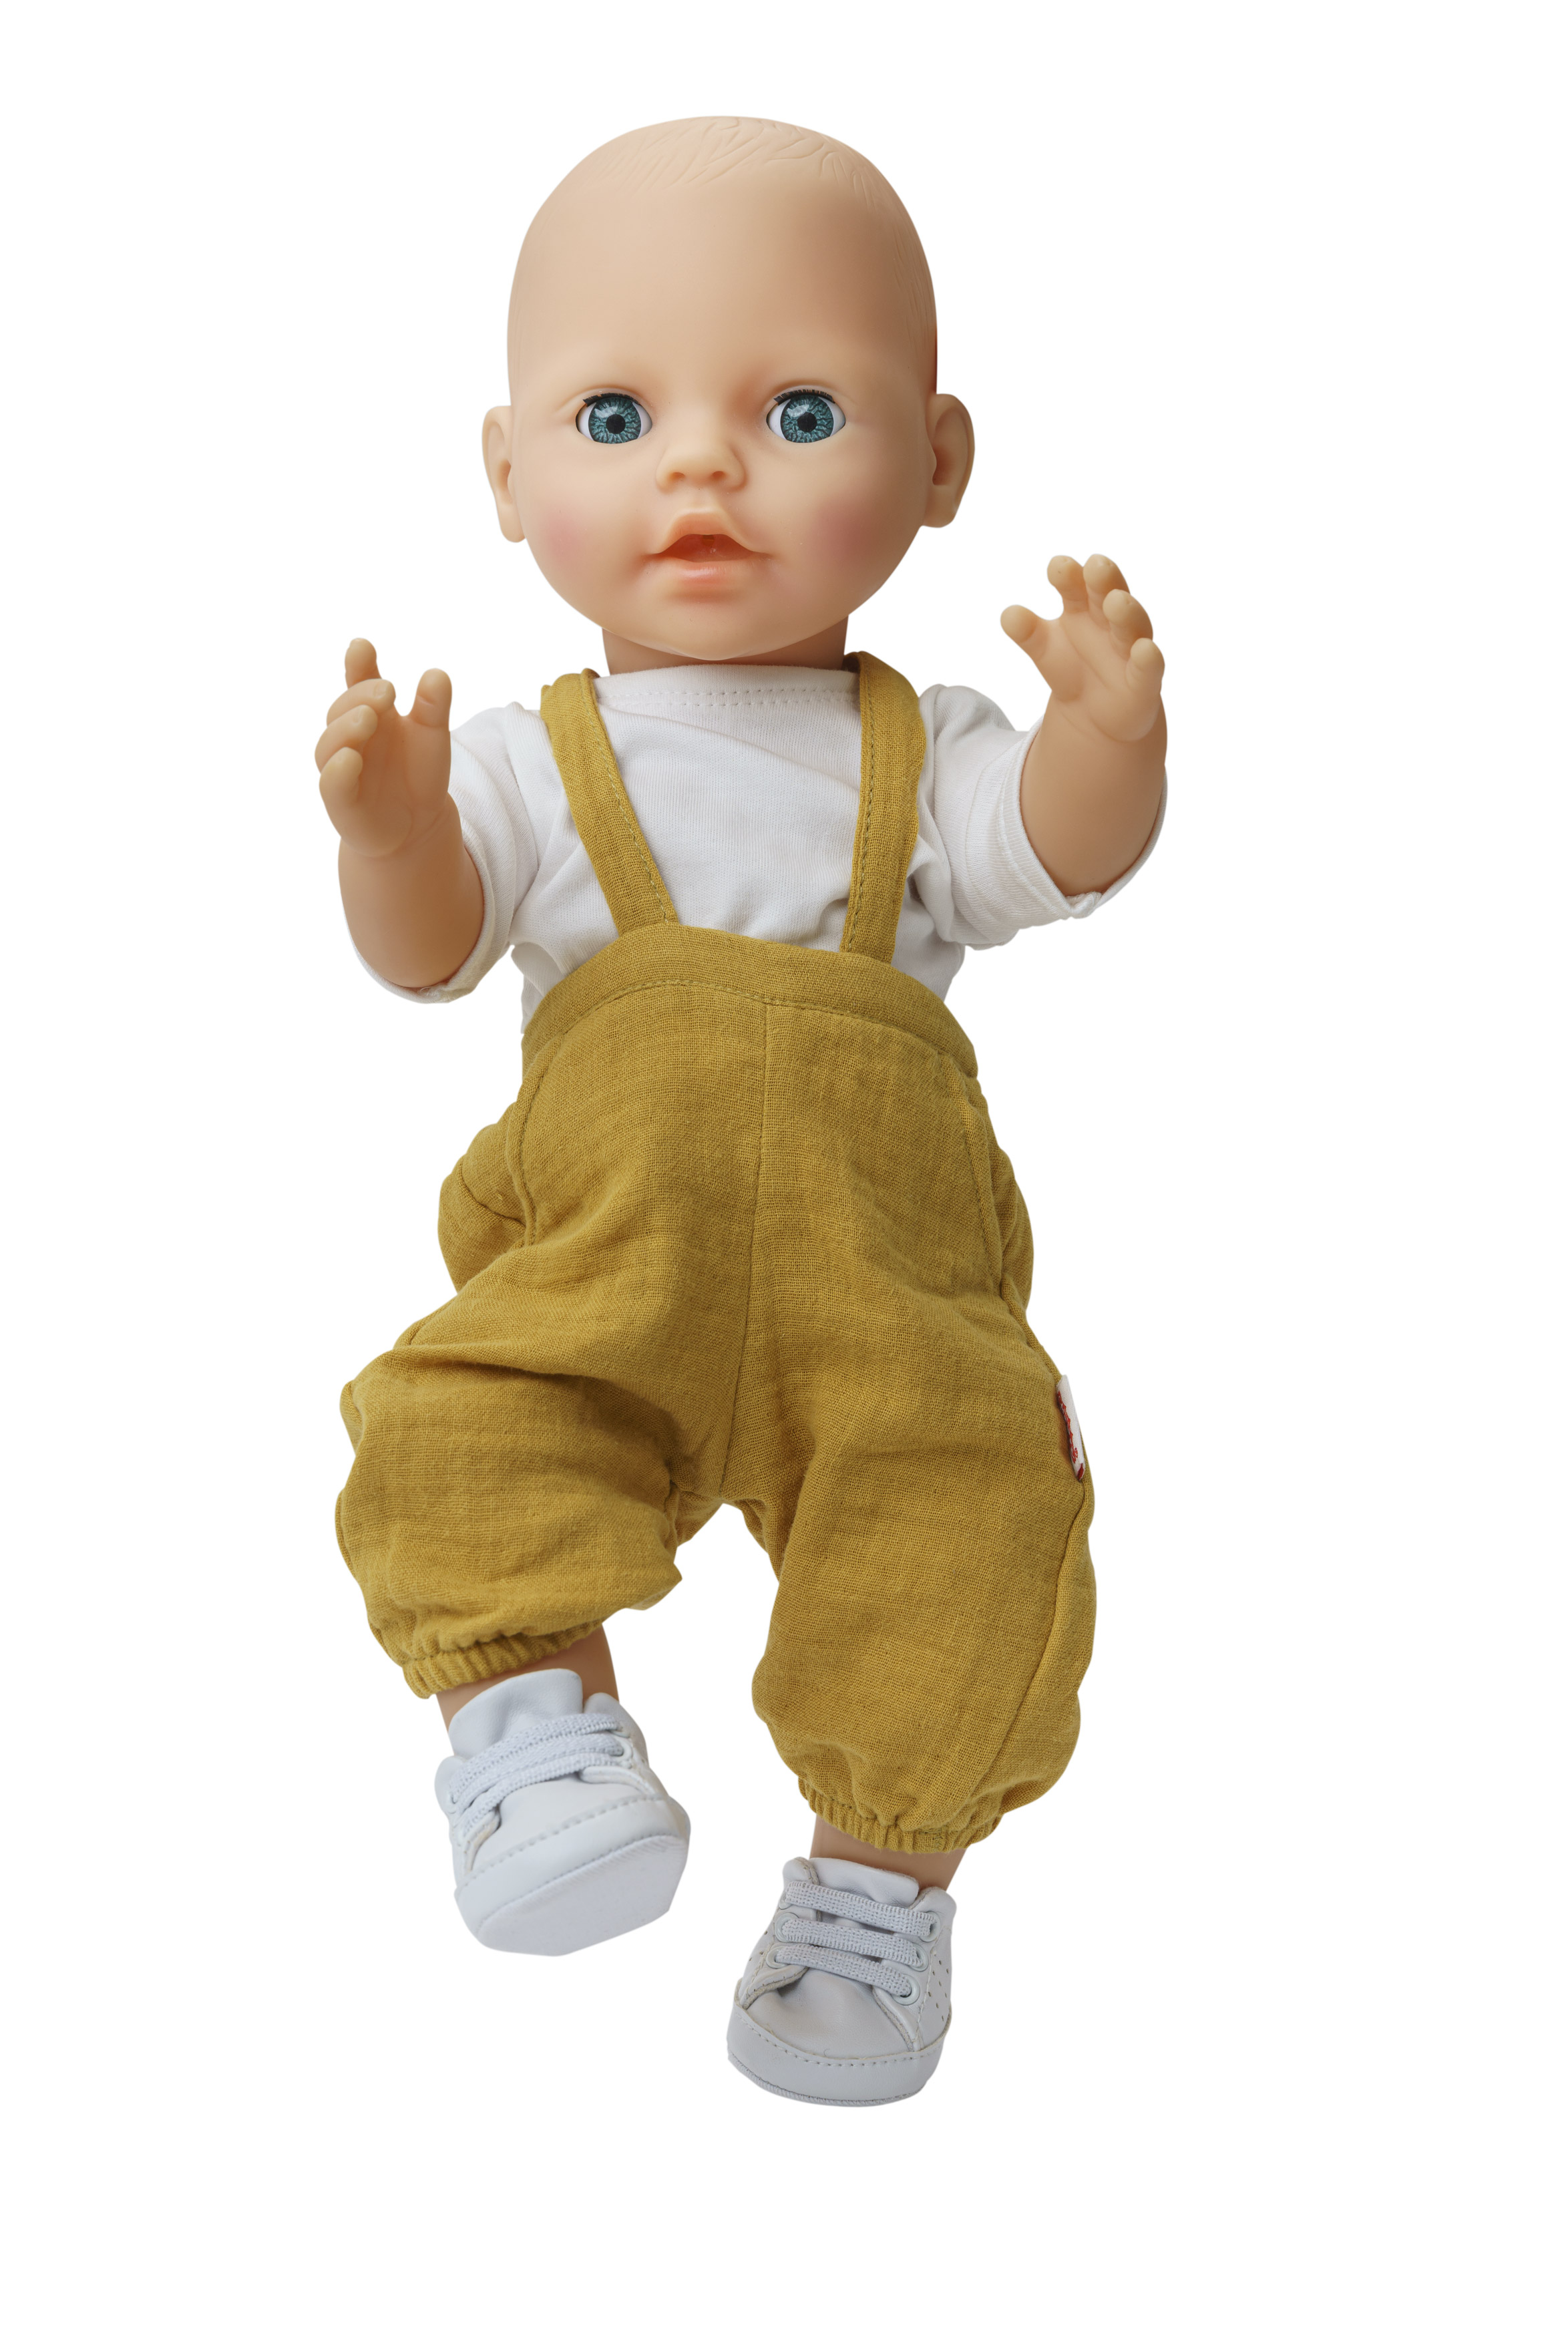 Puppen-Latzhose aus 100 % Bio-Baumwolle, honiggelb, mit weißem T-Shirt, 2-teilig, Gr. 35-45 cm